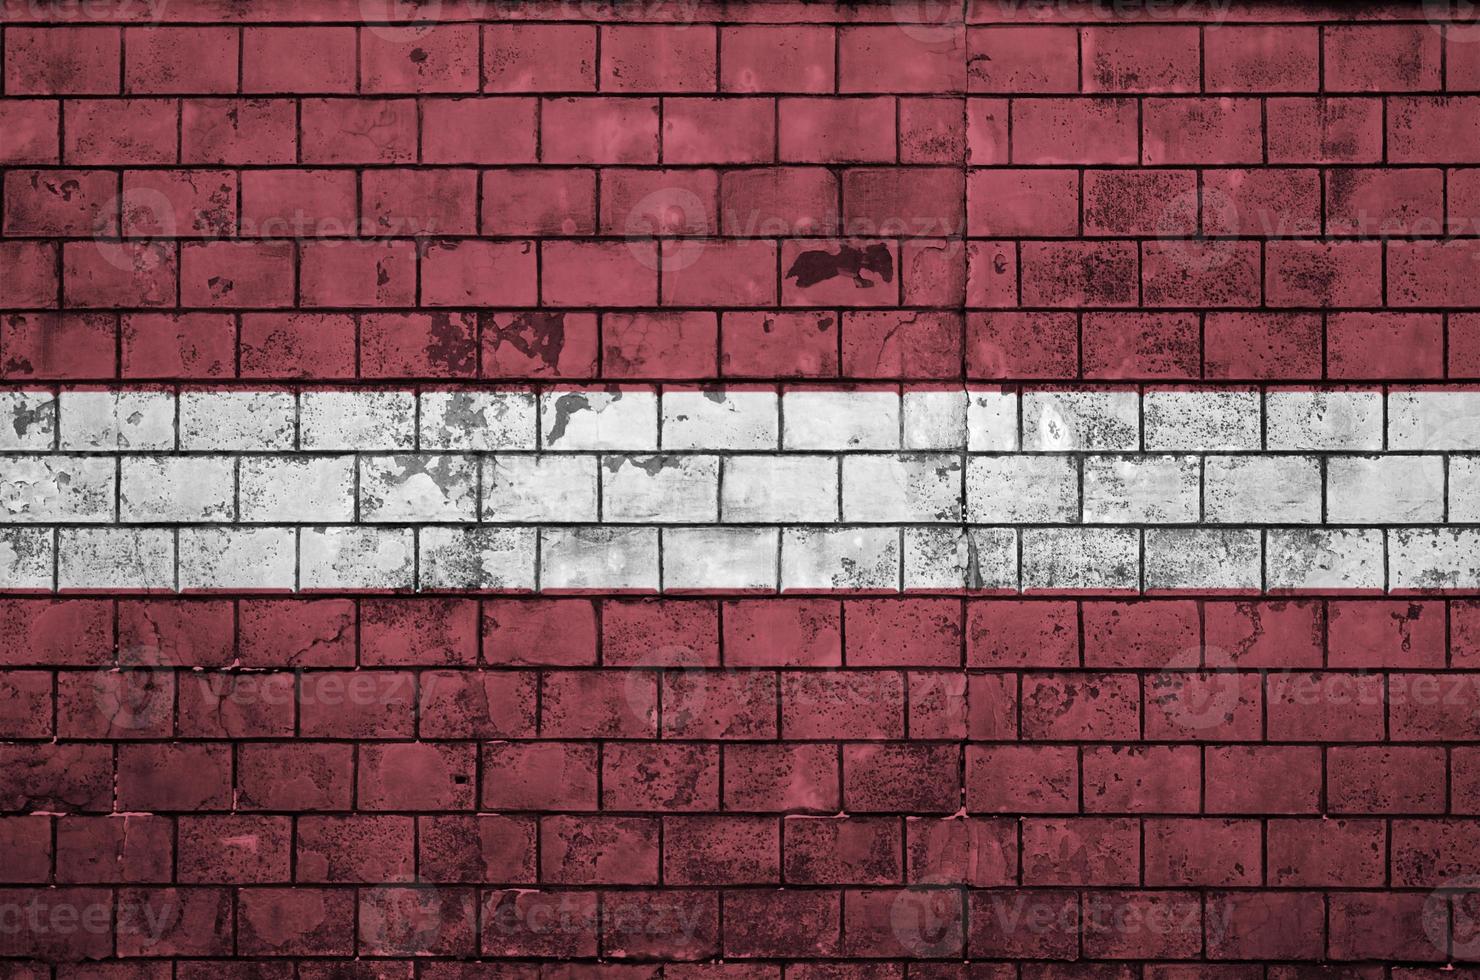 Lettland-Flagge wird auf eine alte Backsteinmauer gemalt foto